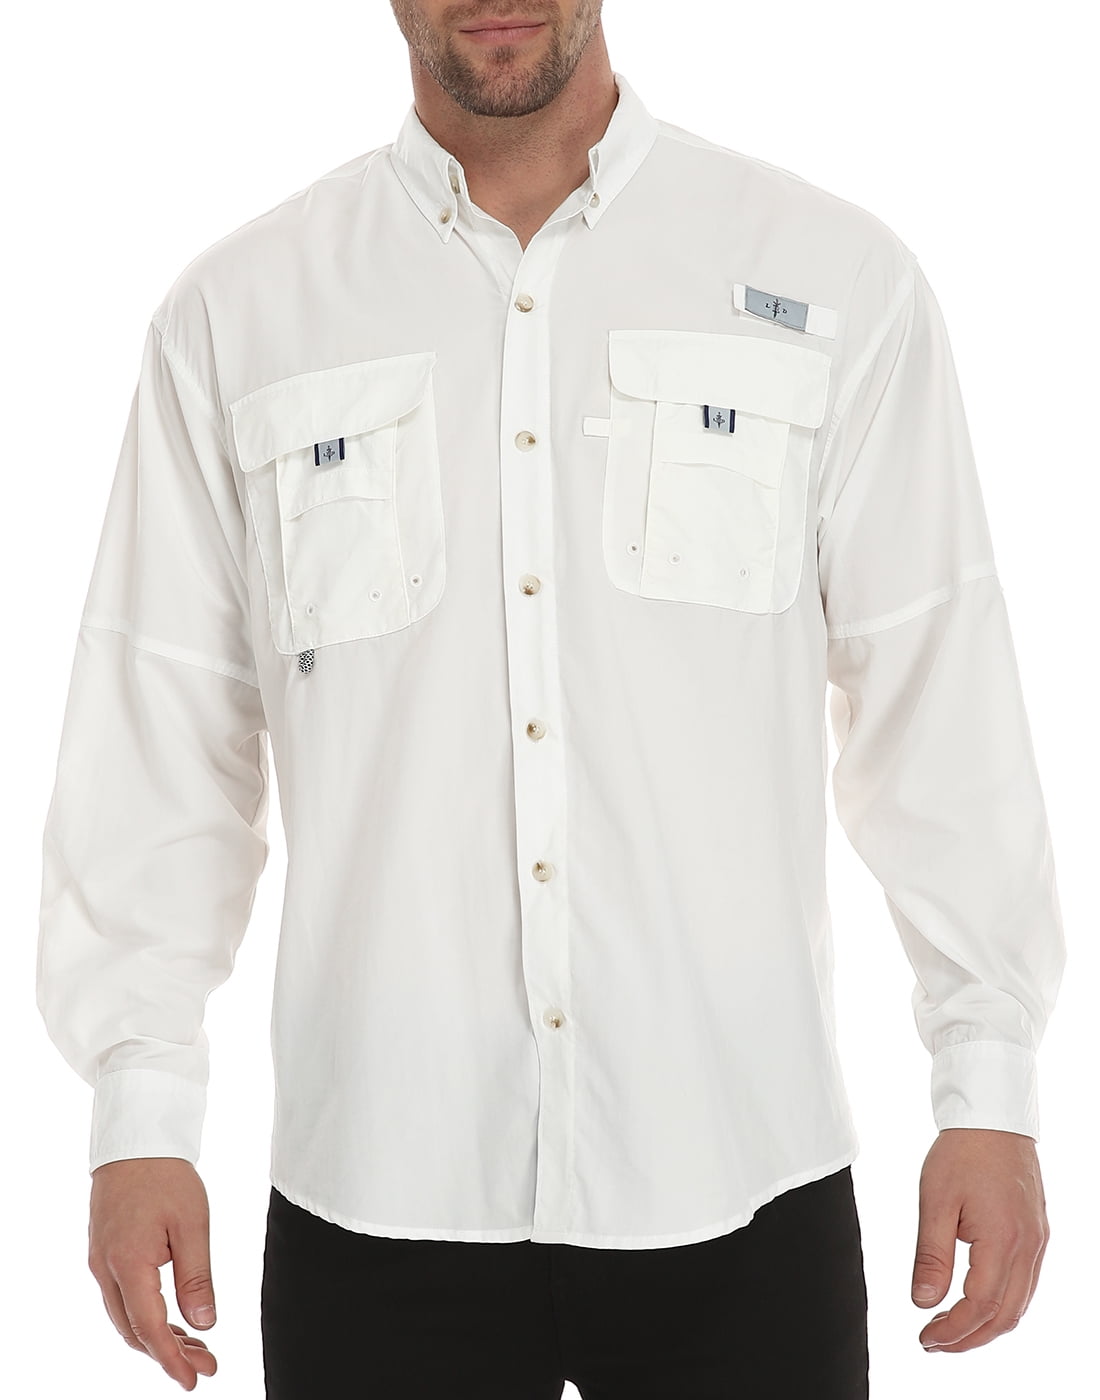 LRD Men's UPF 30 Long Sleeve Button Down Fishing Shirts Light Blue XXL 